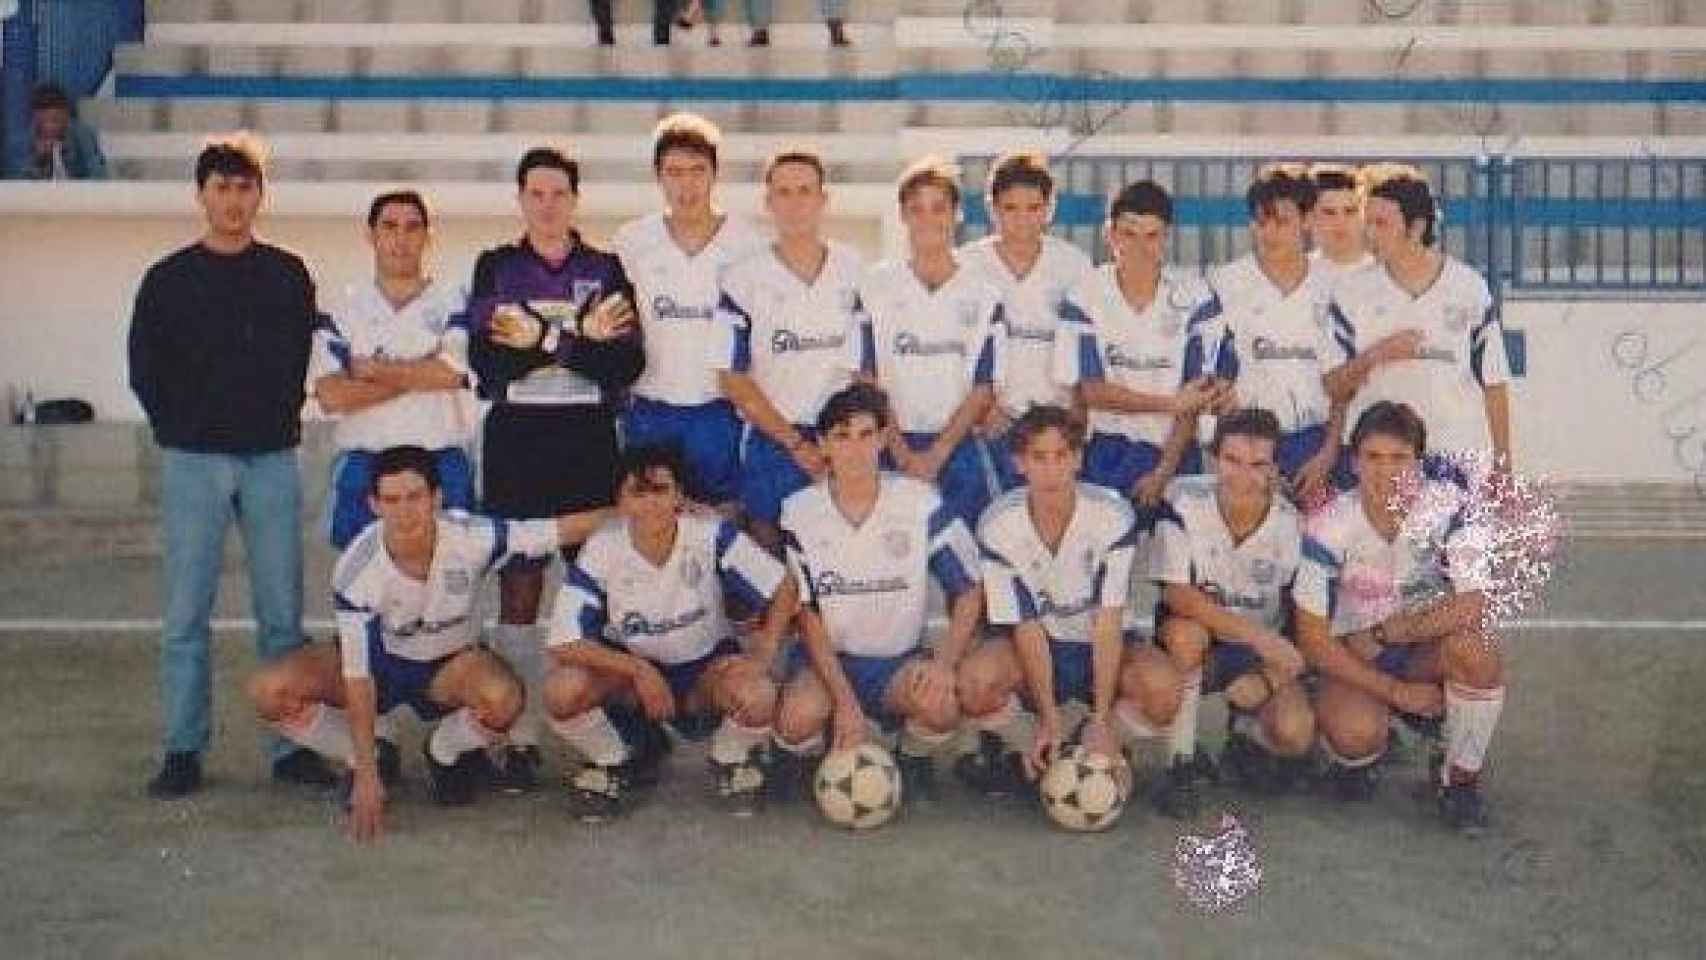 Temporada 93-94 del Motril juvenil. Rubiales está abajo, el tercero por la derecha.